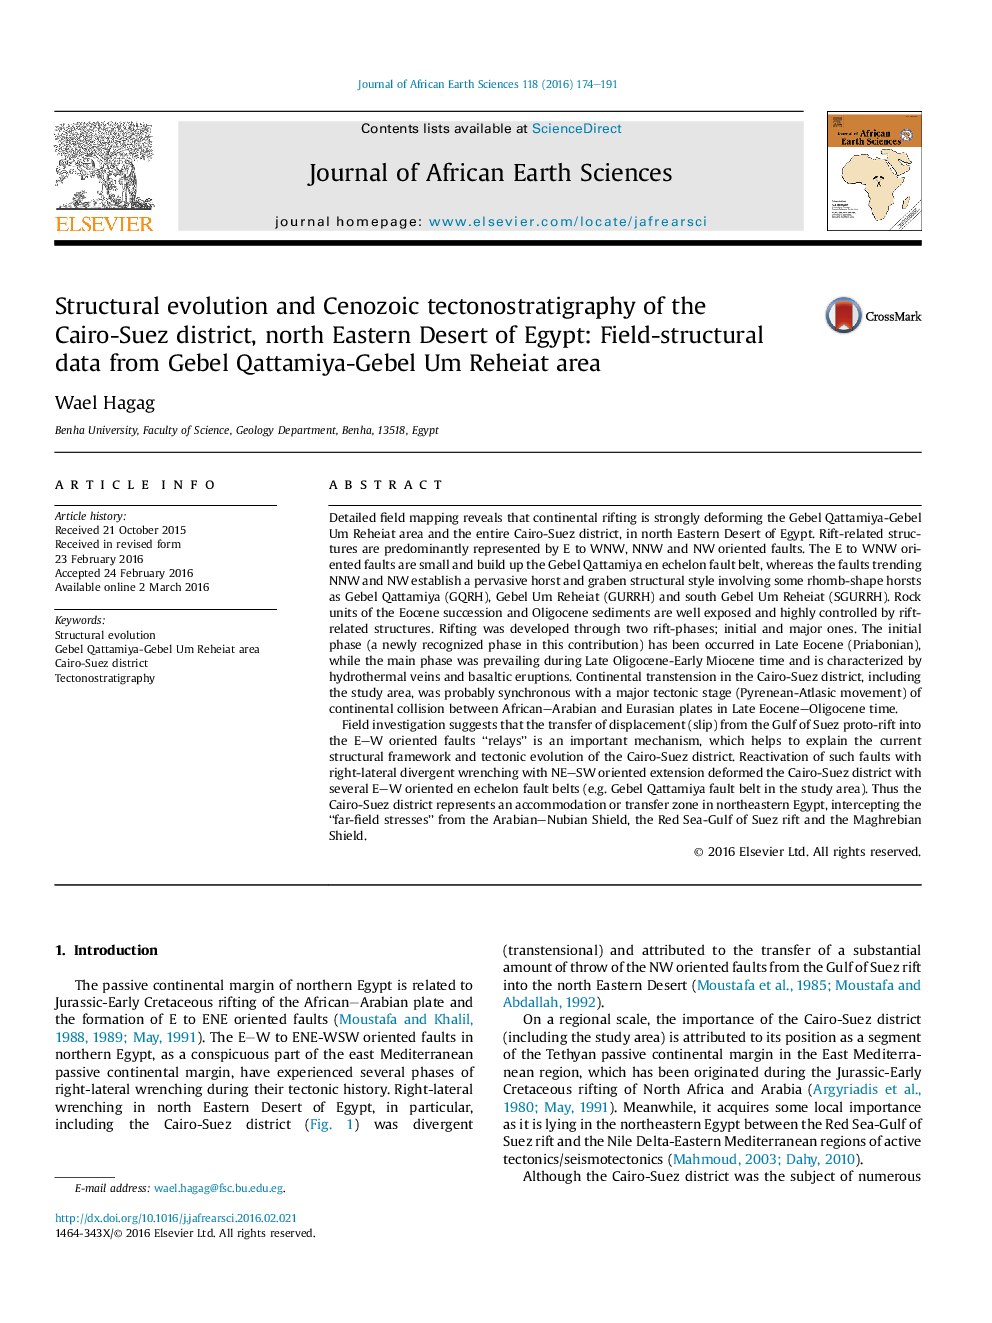 تکامل ساختاری و تکتونستراتیگرافی قوز زایی از ناحیه قاهره-سوئز، صحرای شمال شرقی مصر: داده های فیلد-ساختاری از منطقه گوگل کاتدمیا-گوبل عام رحایت 